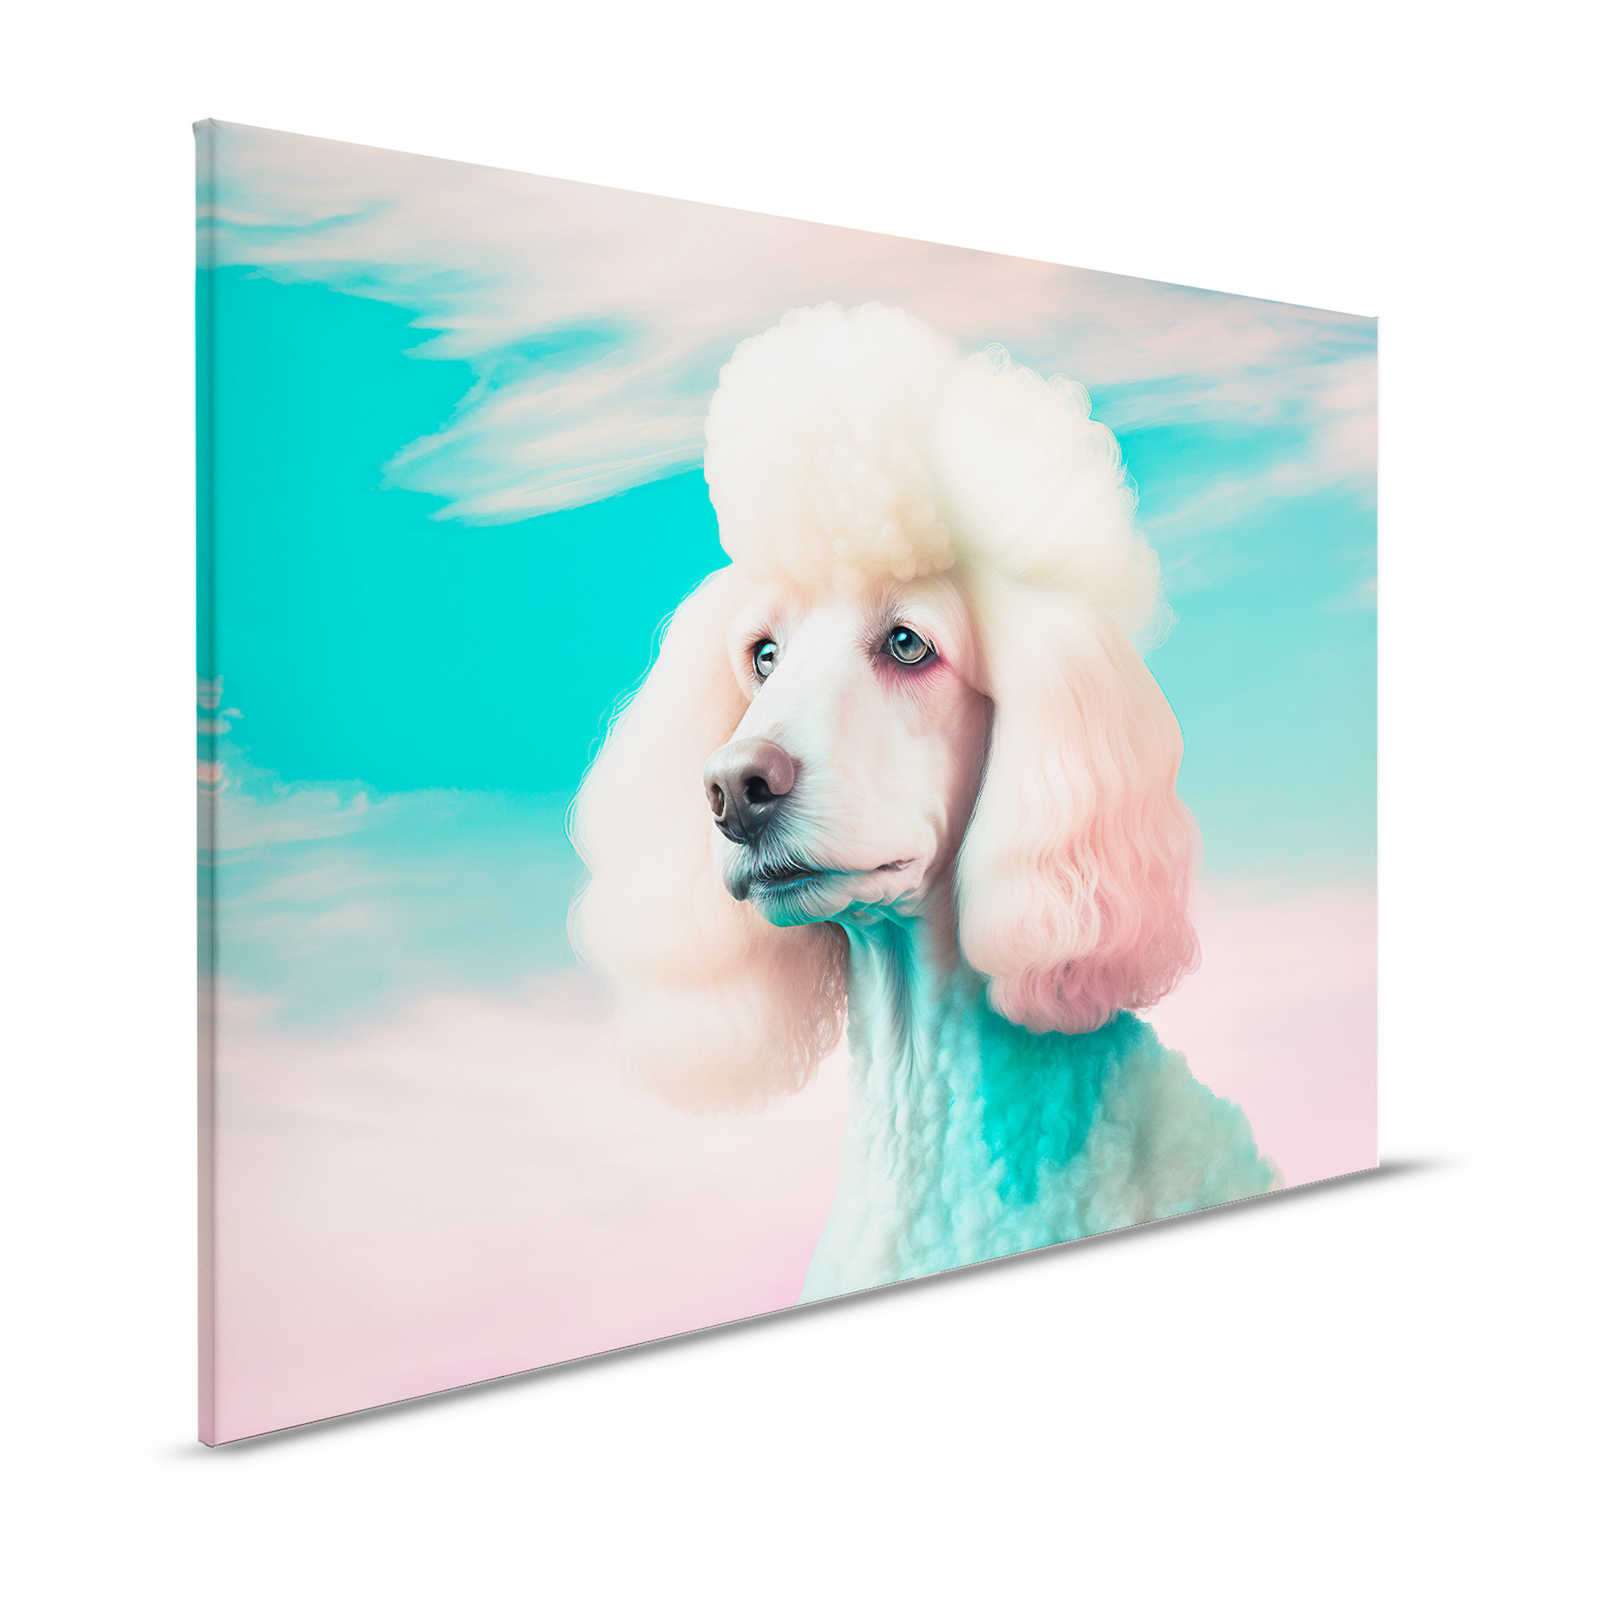 KI Cuadro »perro arco iris« - 120 cm x 80 cm
